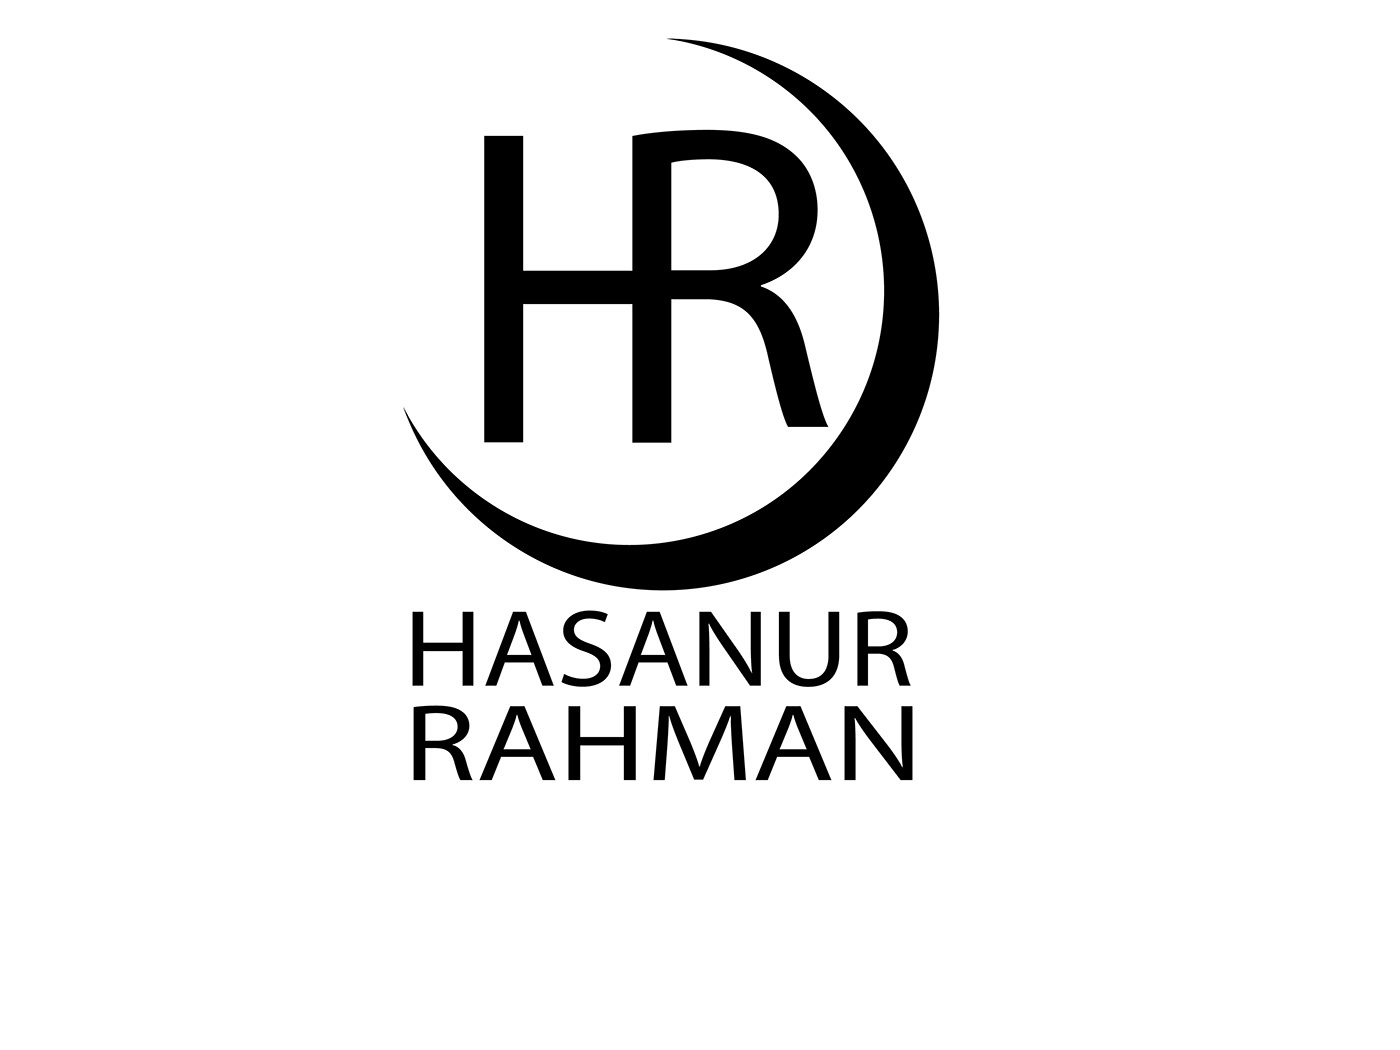 design hr logo HR LOGO DESIGN logo Logo Design logos letter logo letter HR hr letter logo